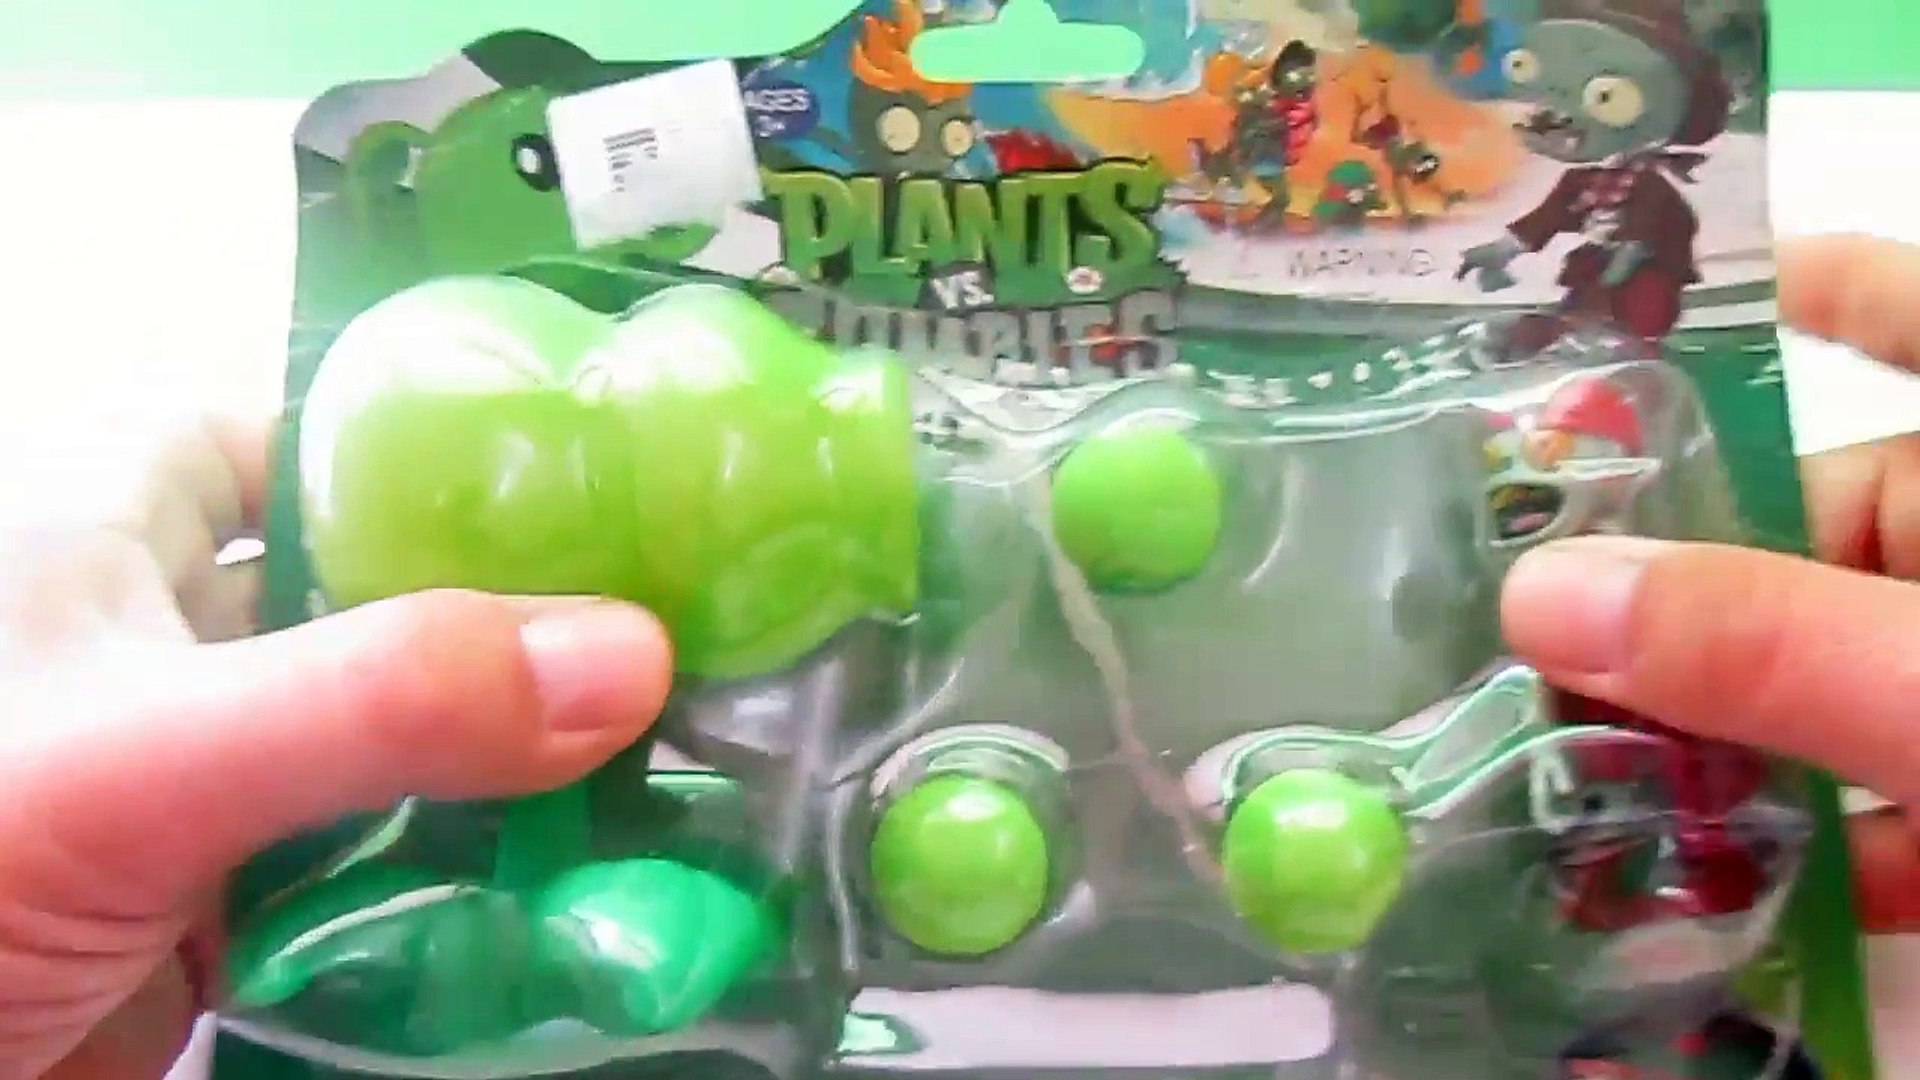 Juguete de Plantas vs Zombies - Plants Vs Zombies toys - Video Dailymotion